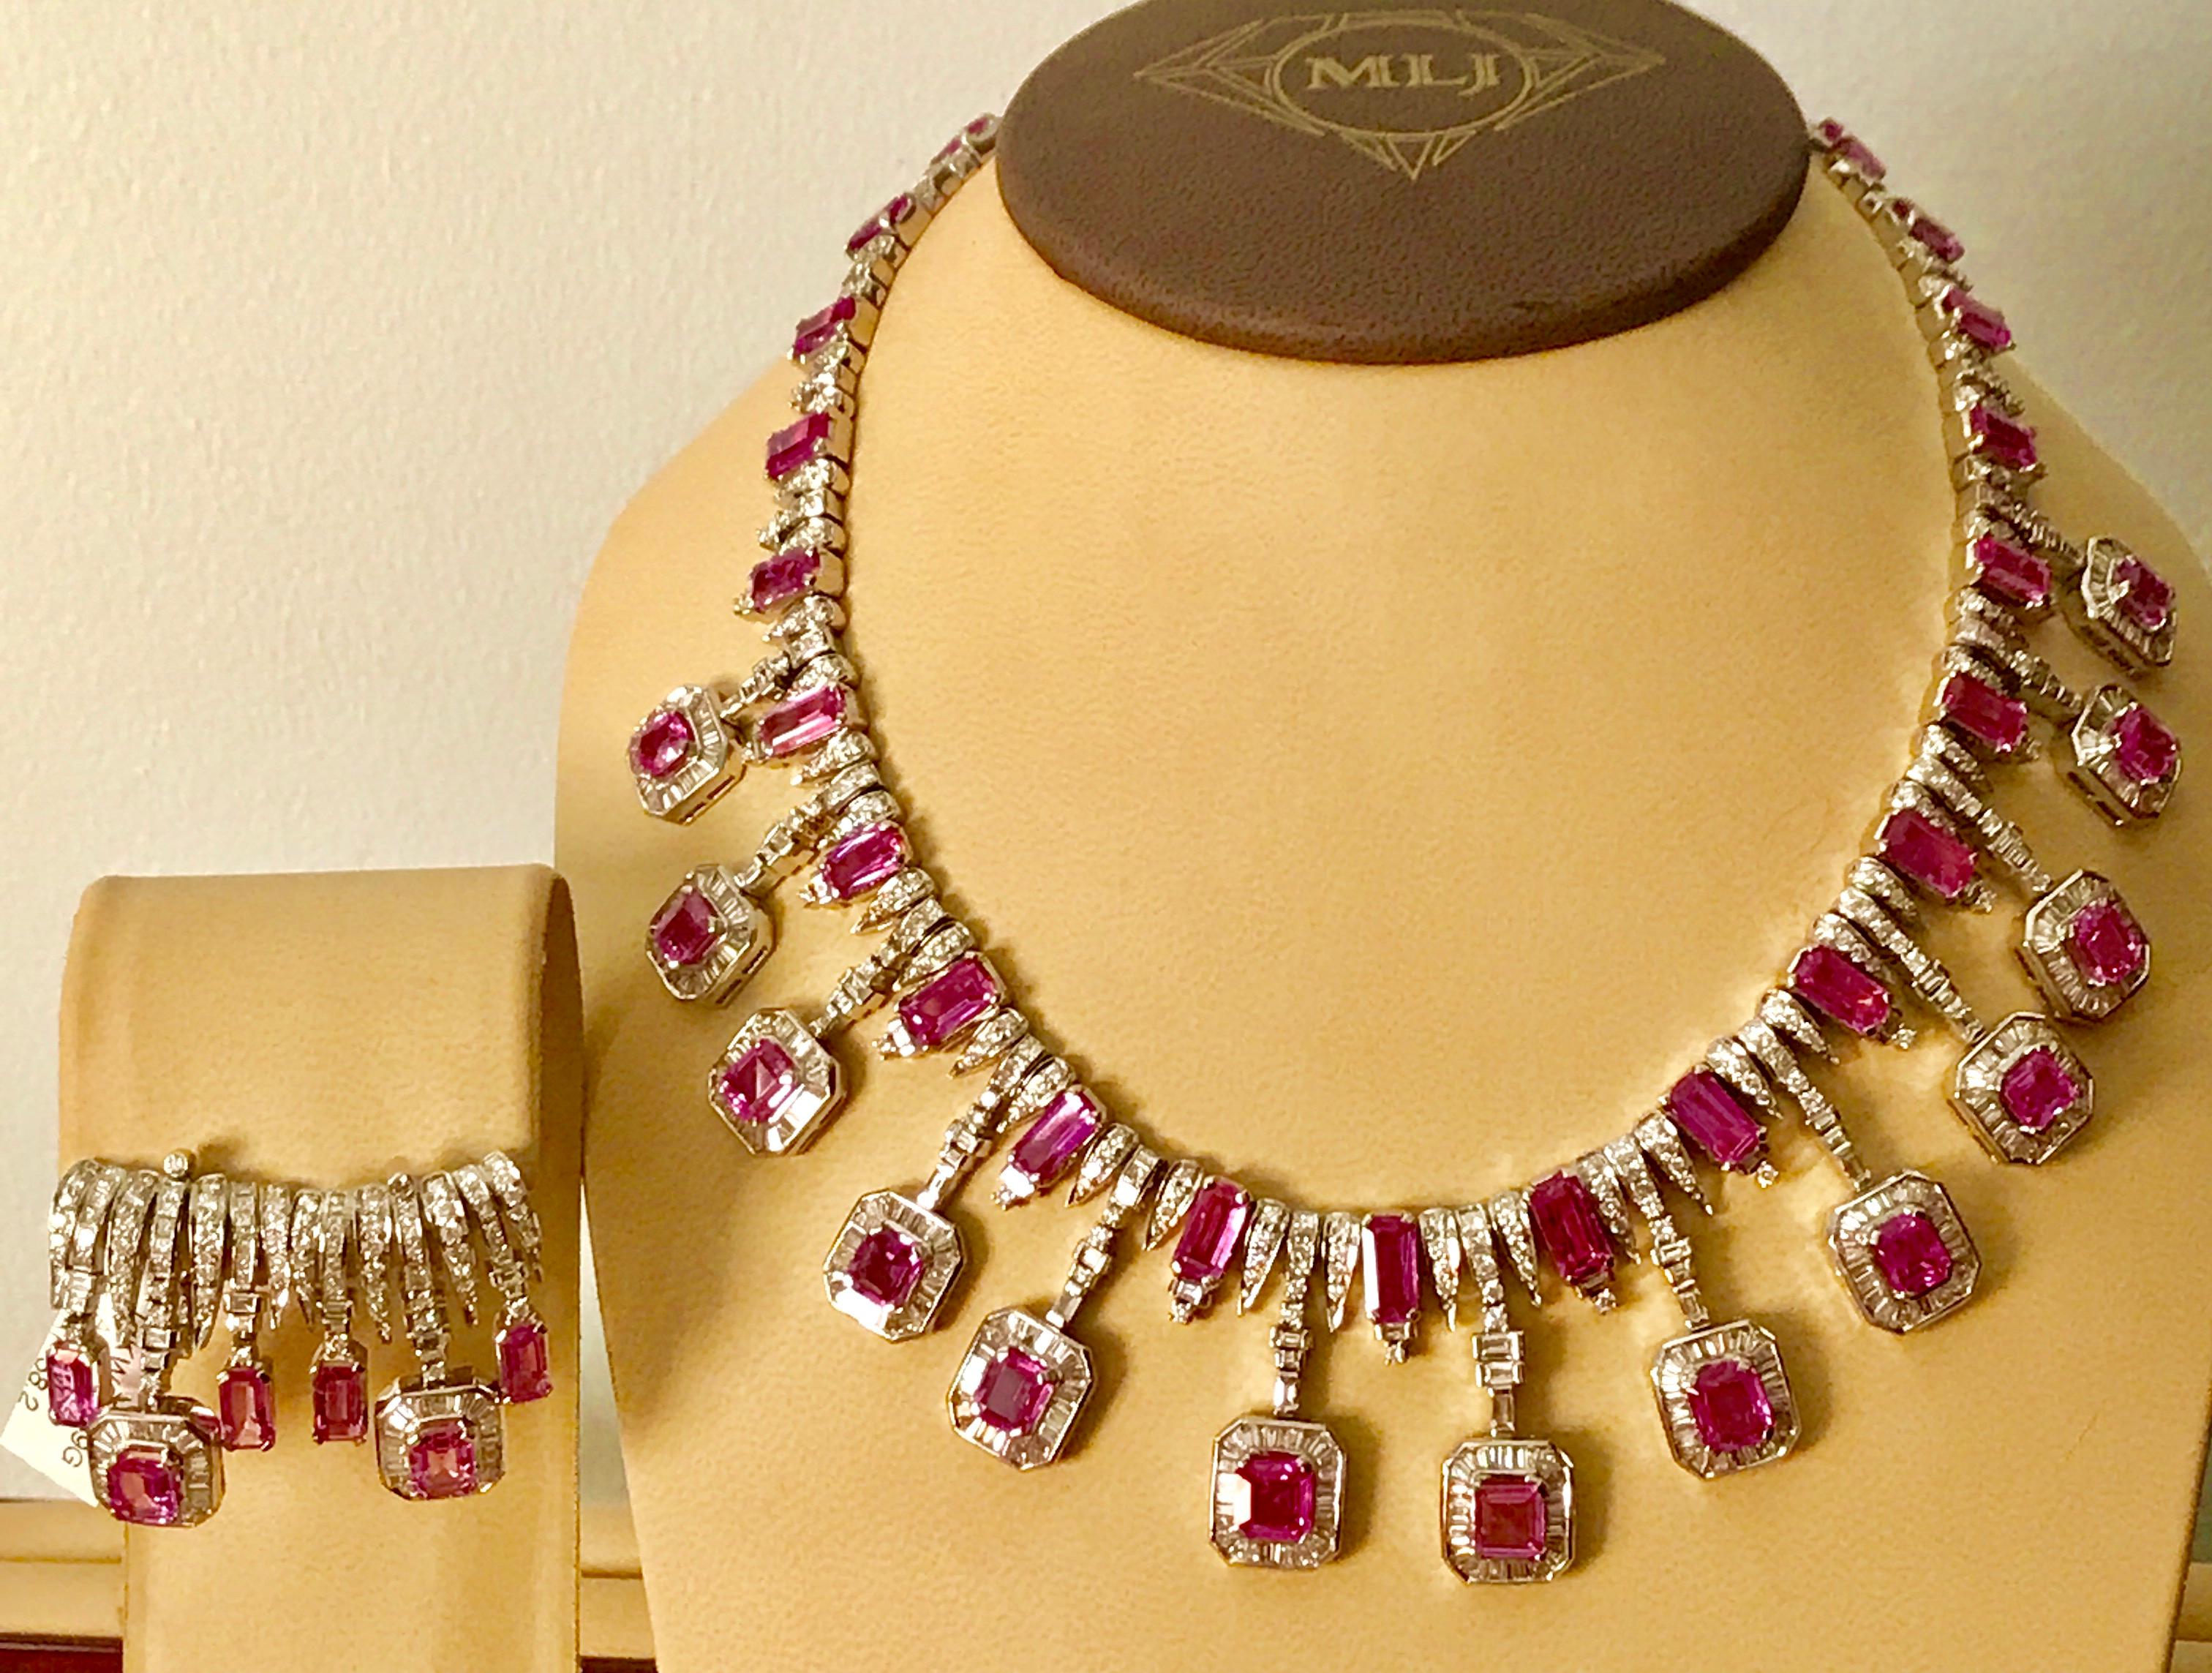 60 carat diamond necklace